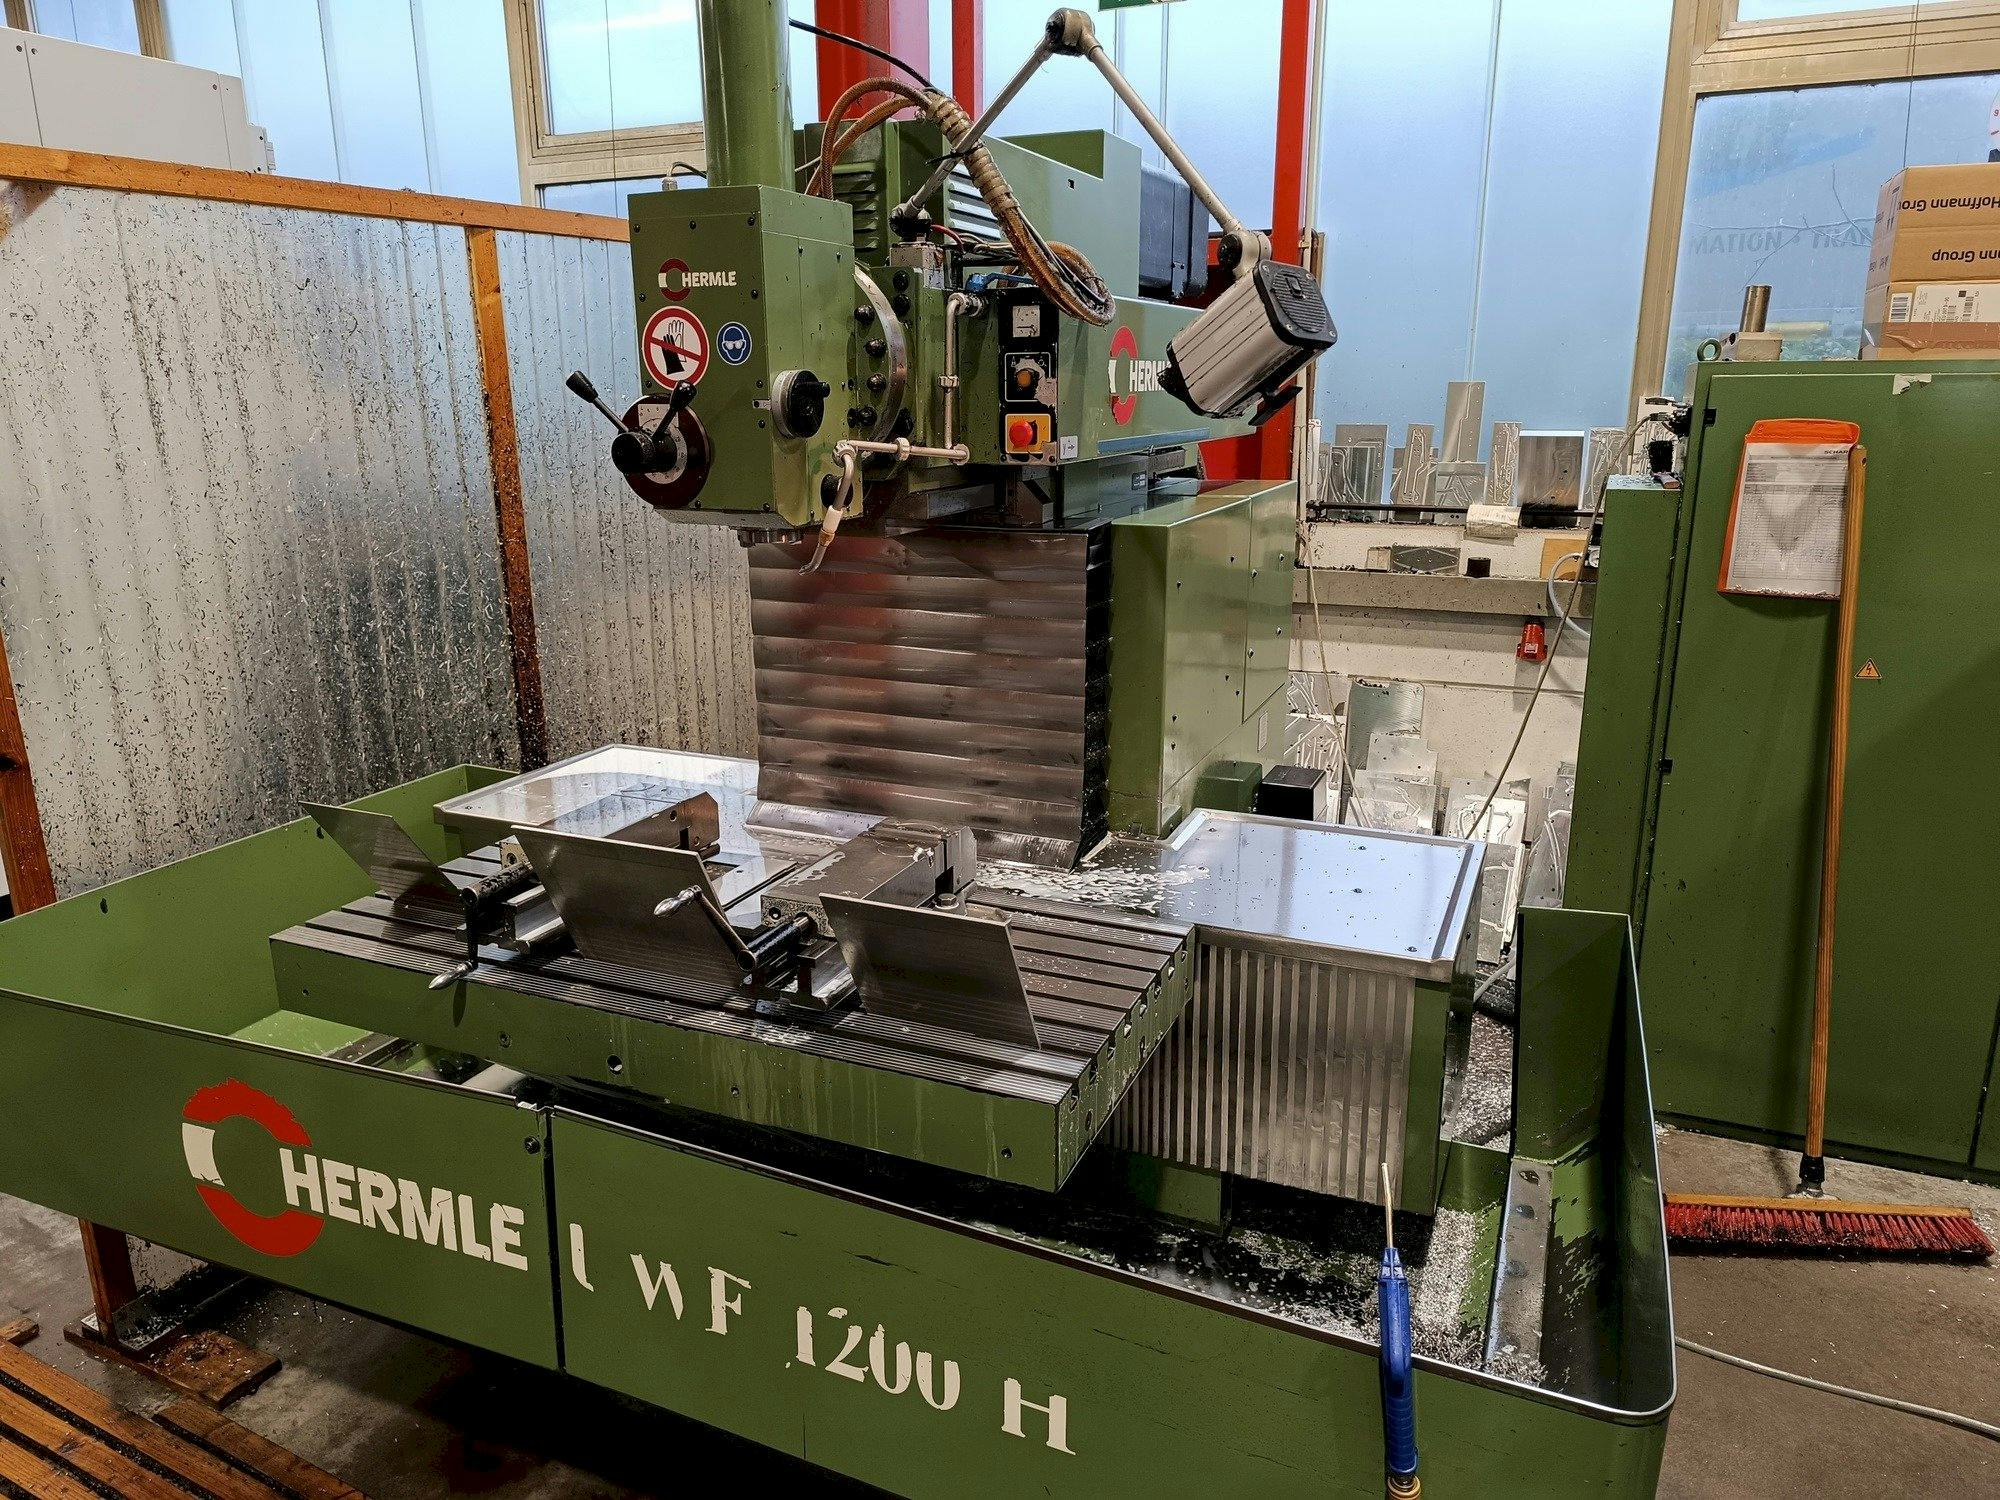 Front view of HERMLE UWF1200  machine